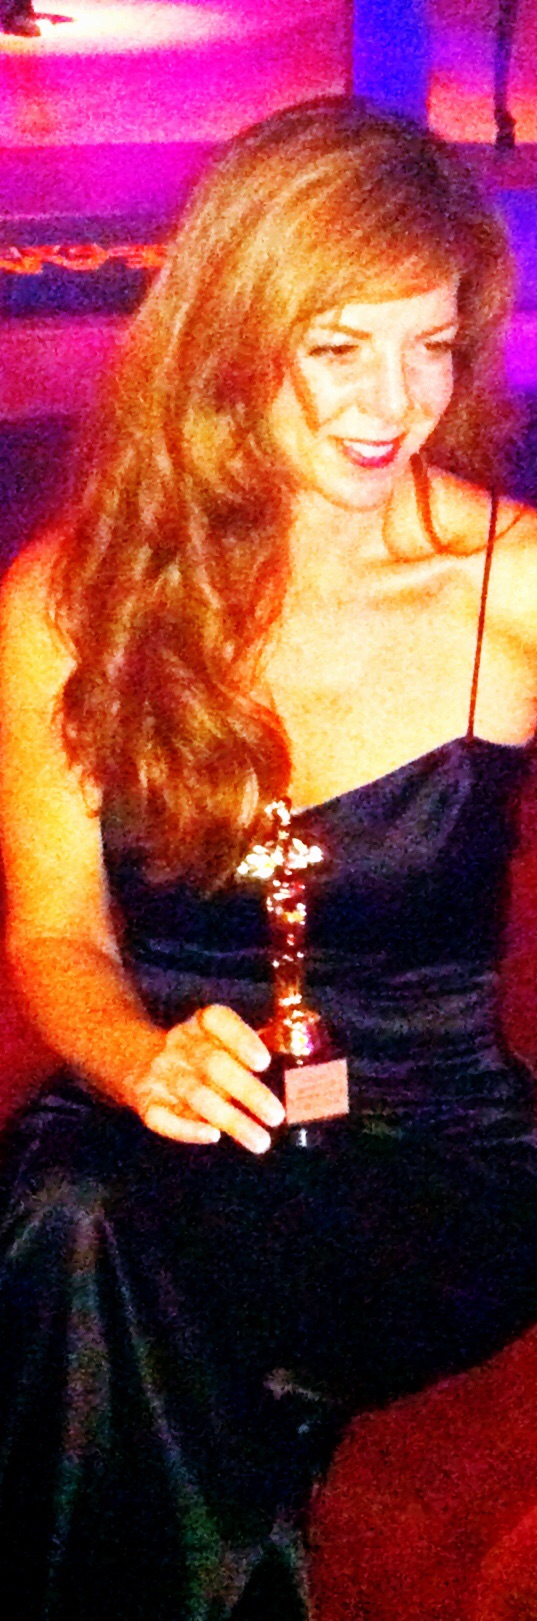 WITA 2013 Best Actress Award